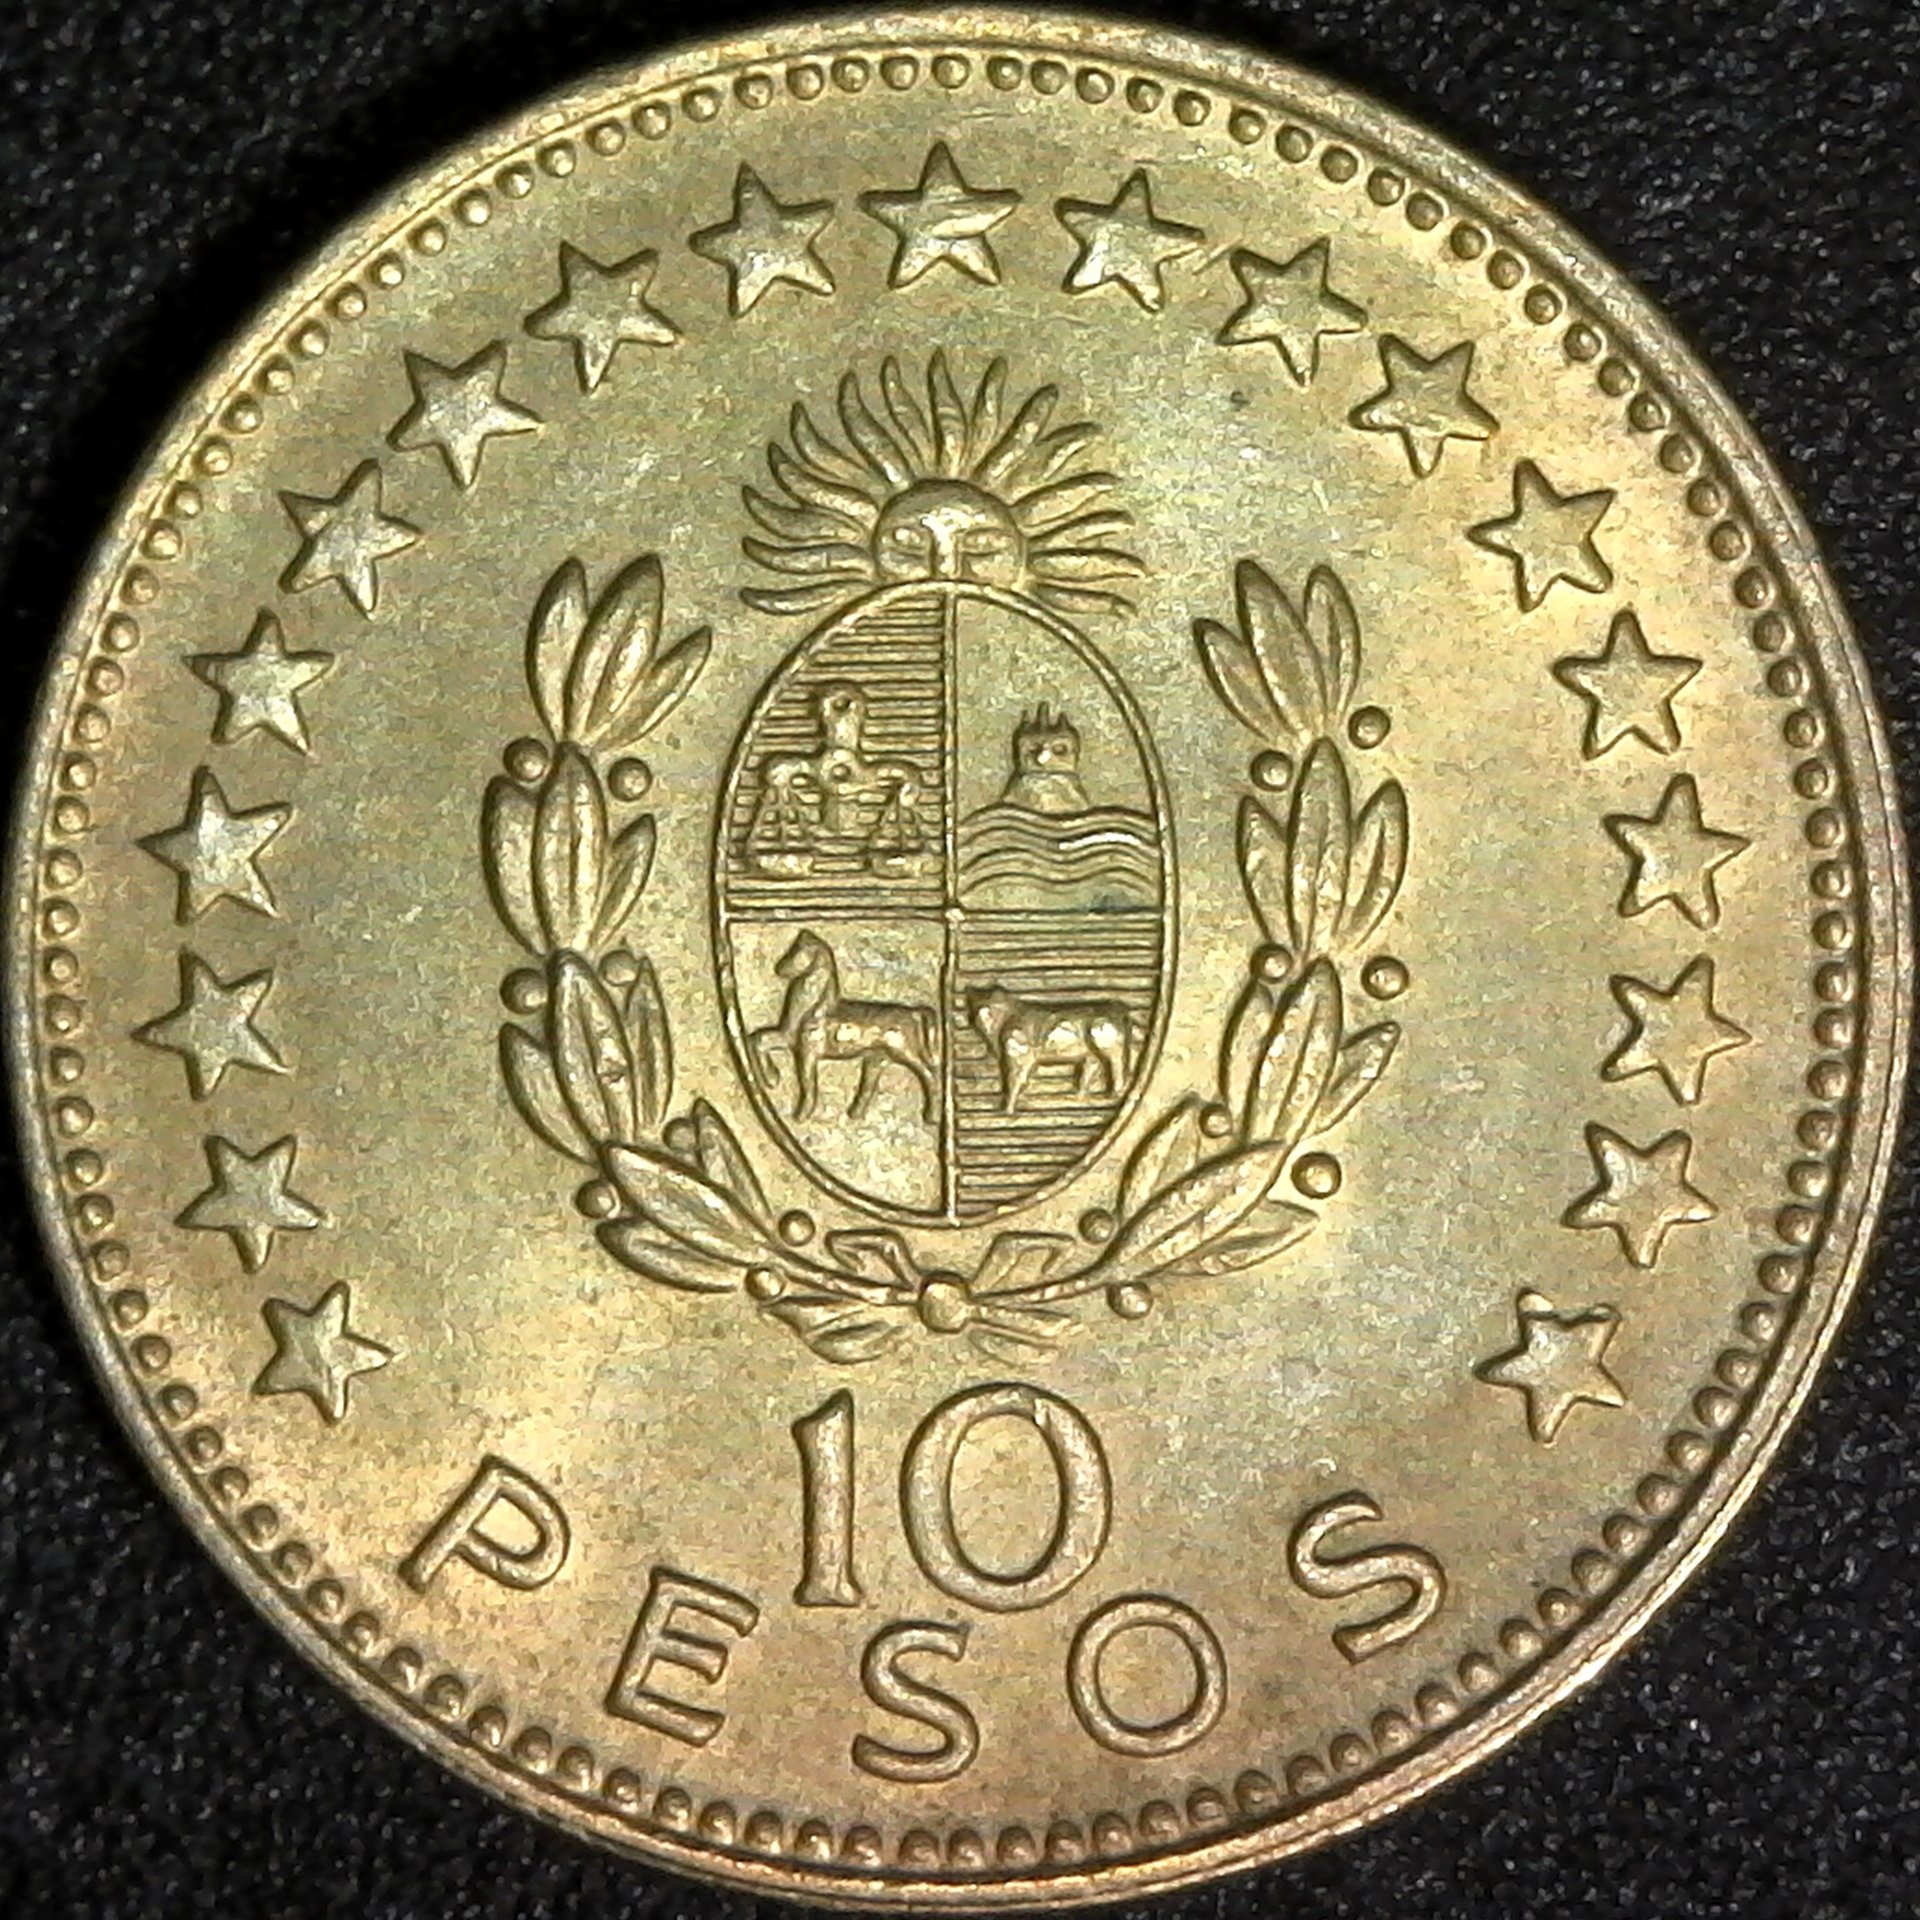 Uruguay 10 Pesos 1965 rev.jpg